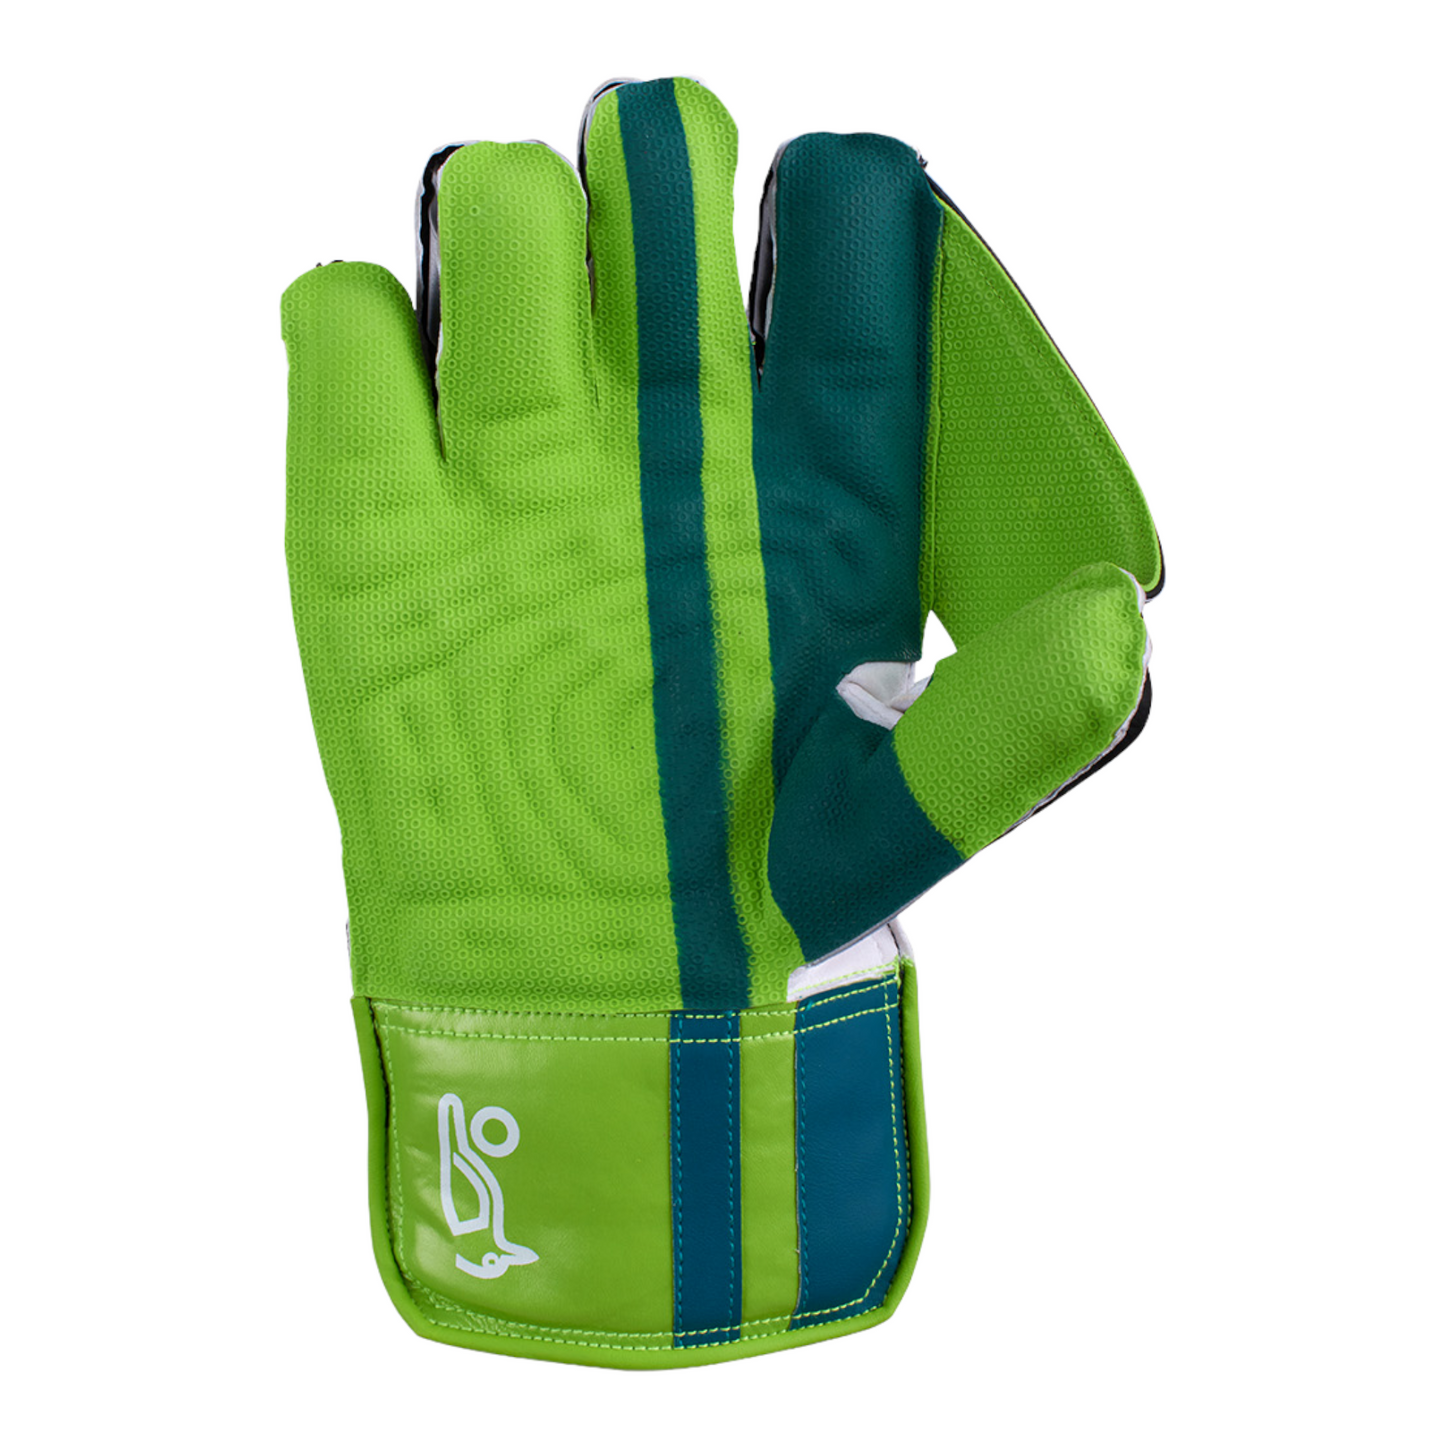 Kookaburra 3.0 LC Wicket Keeping Glove